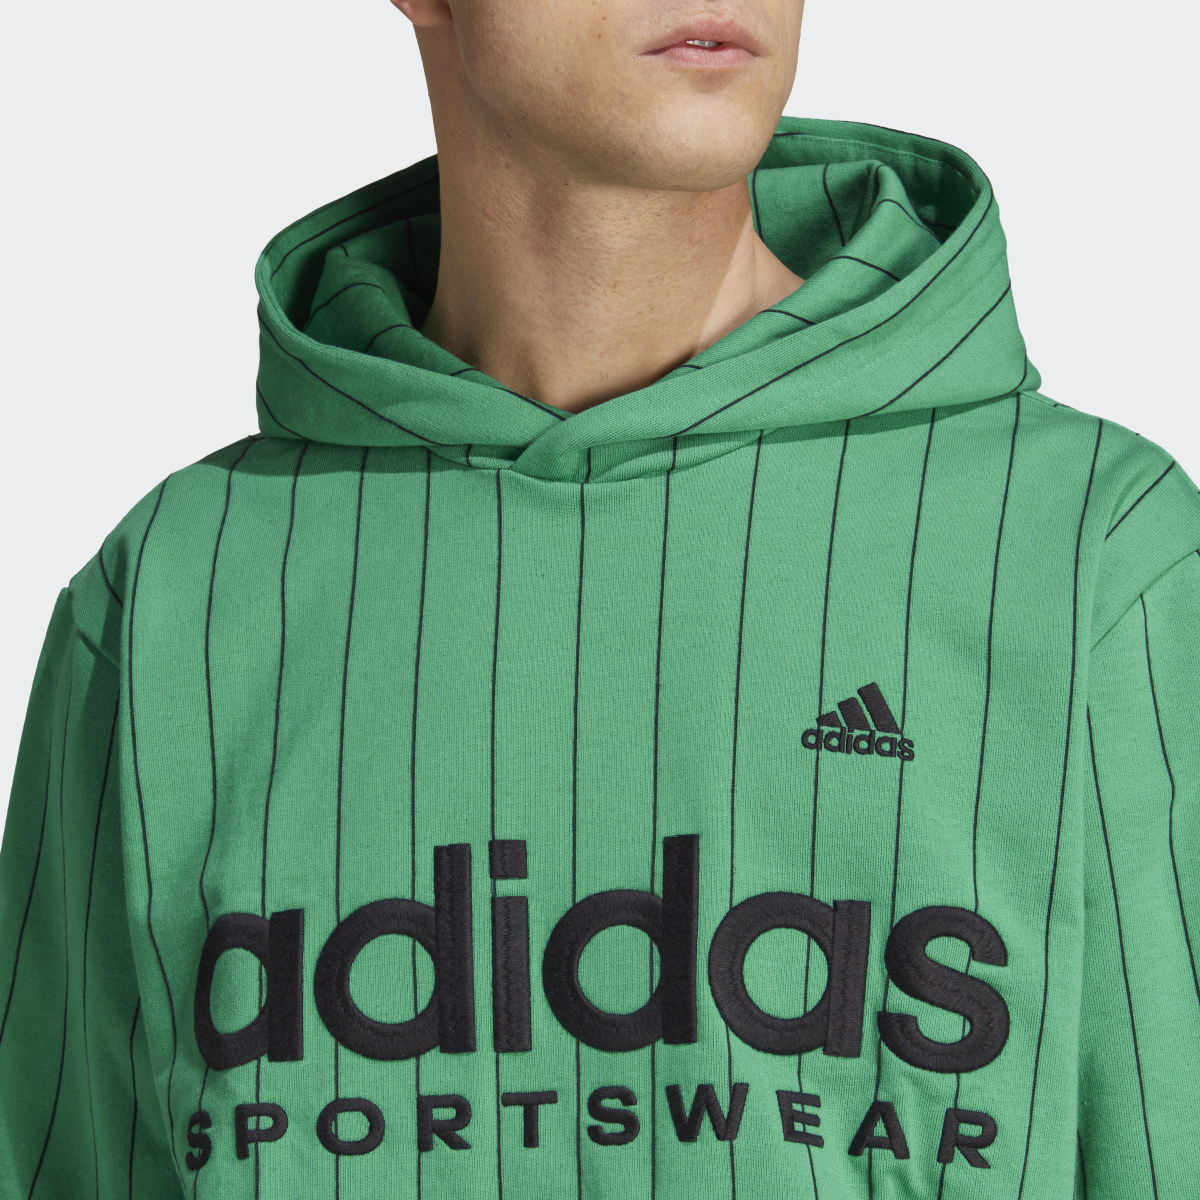 Adidas Camisola Listrada com Capuz em Fleece. 6